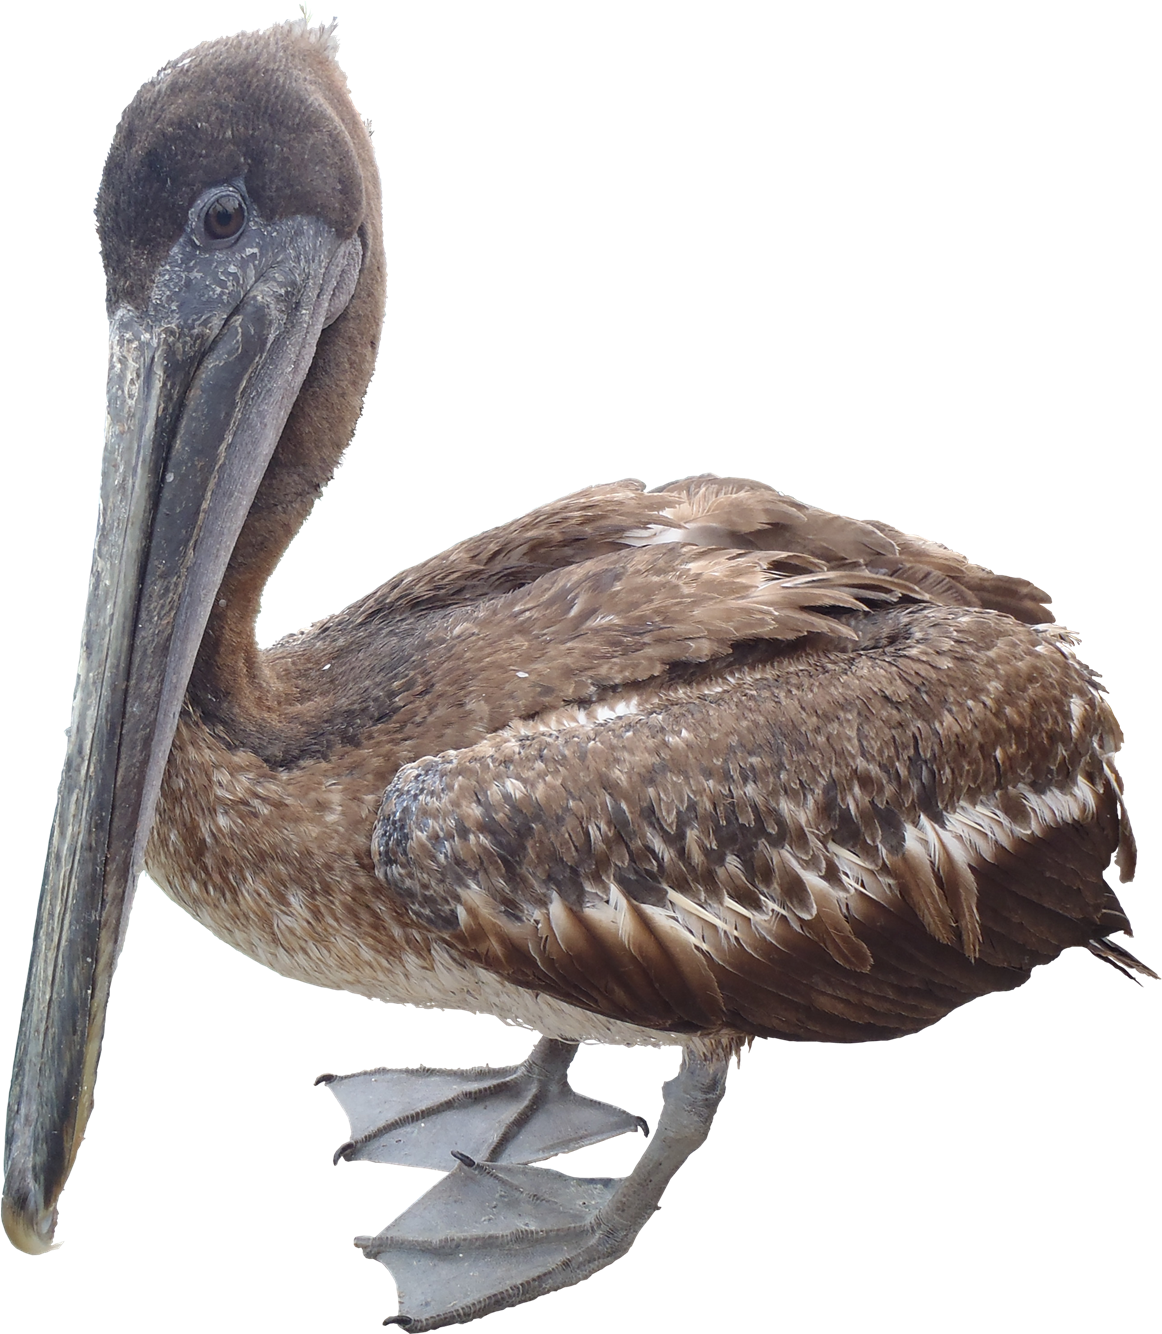 A Brown Bird With A Long Beak